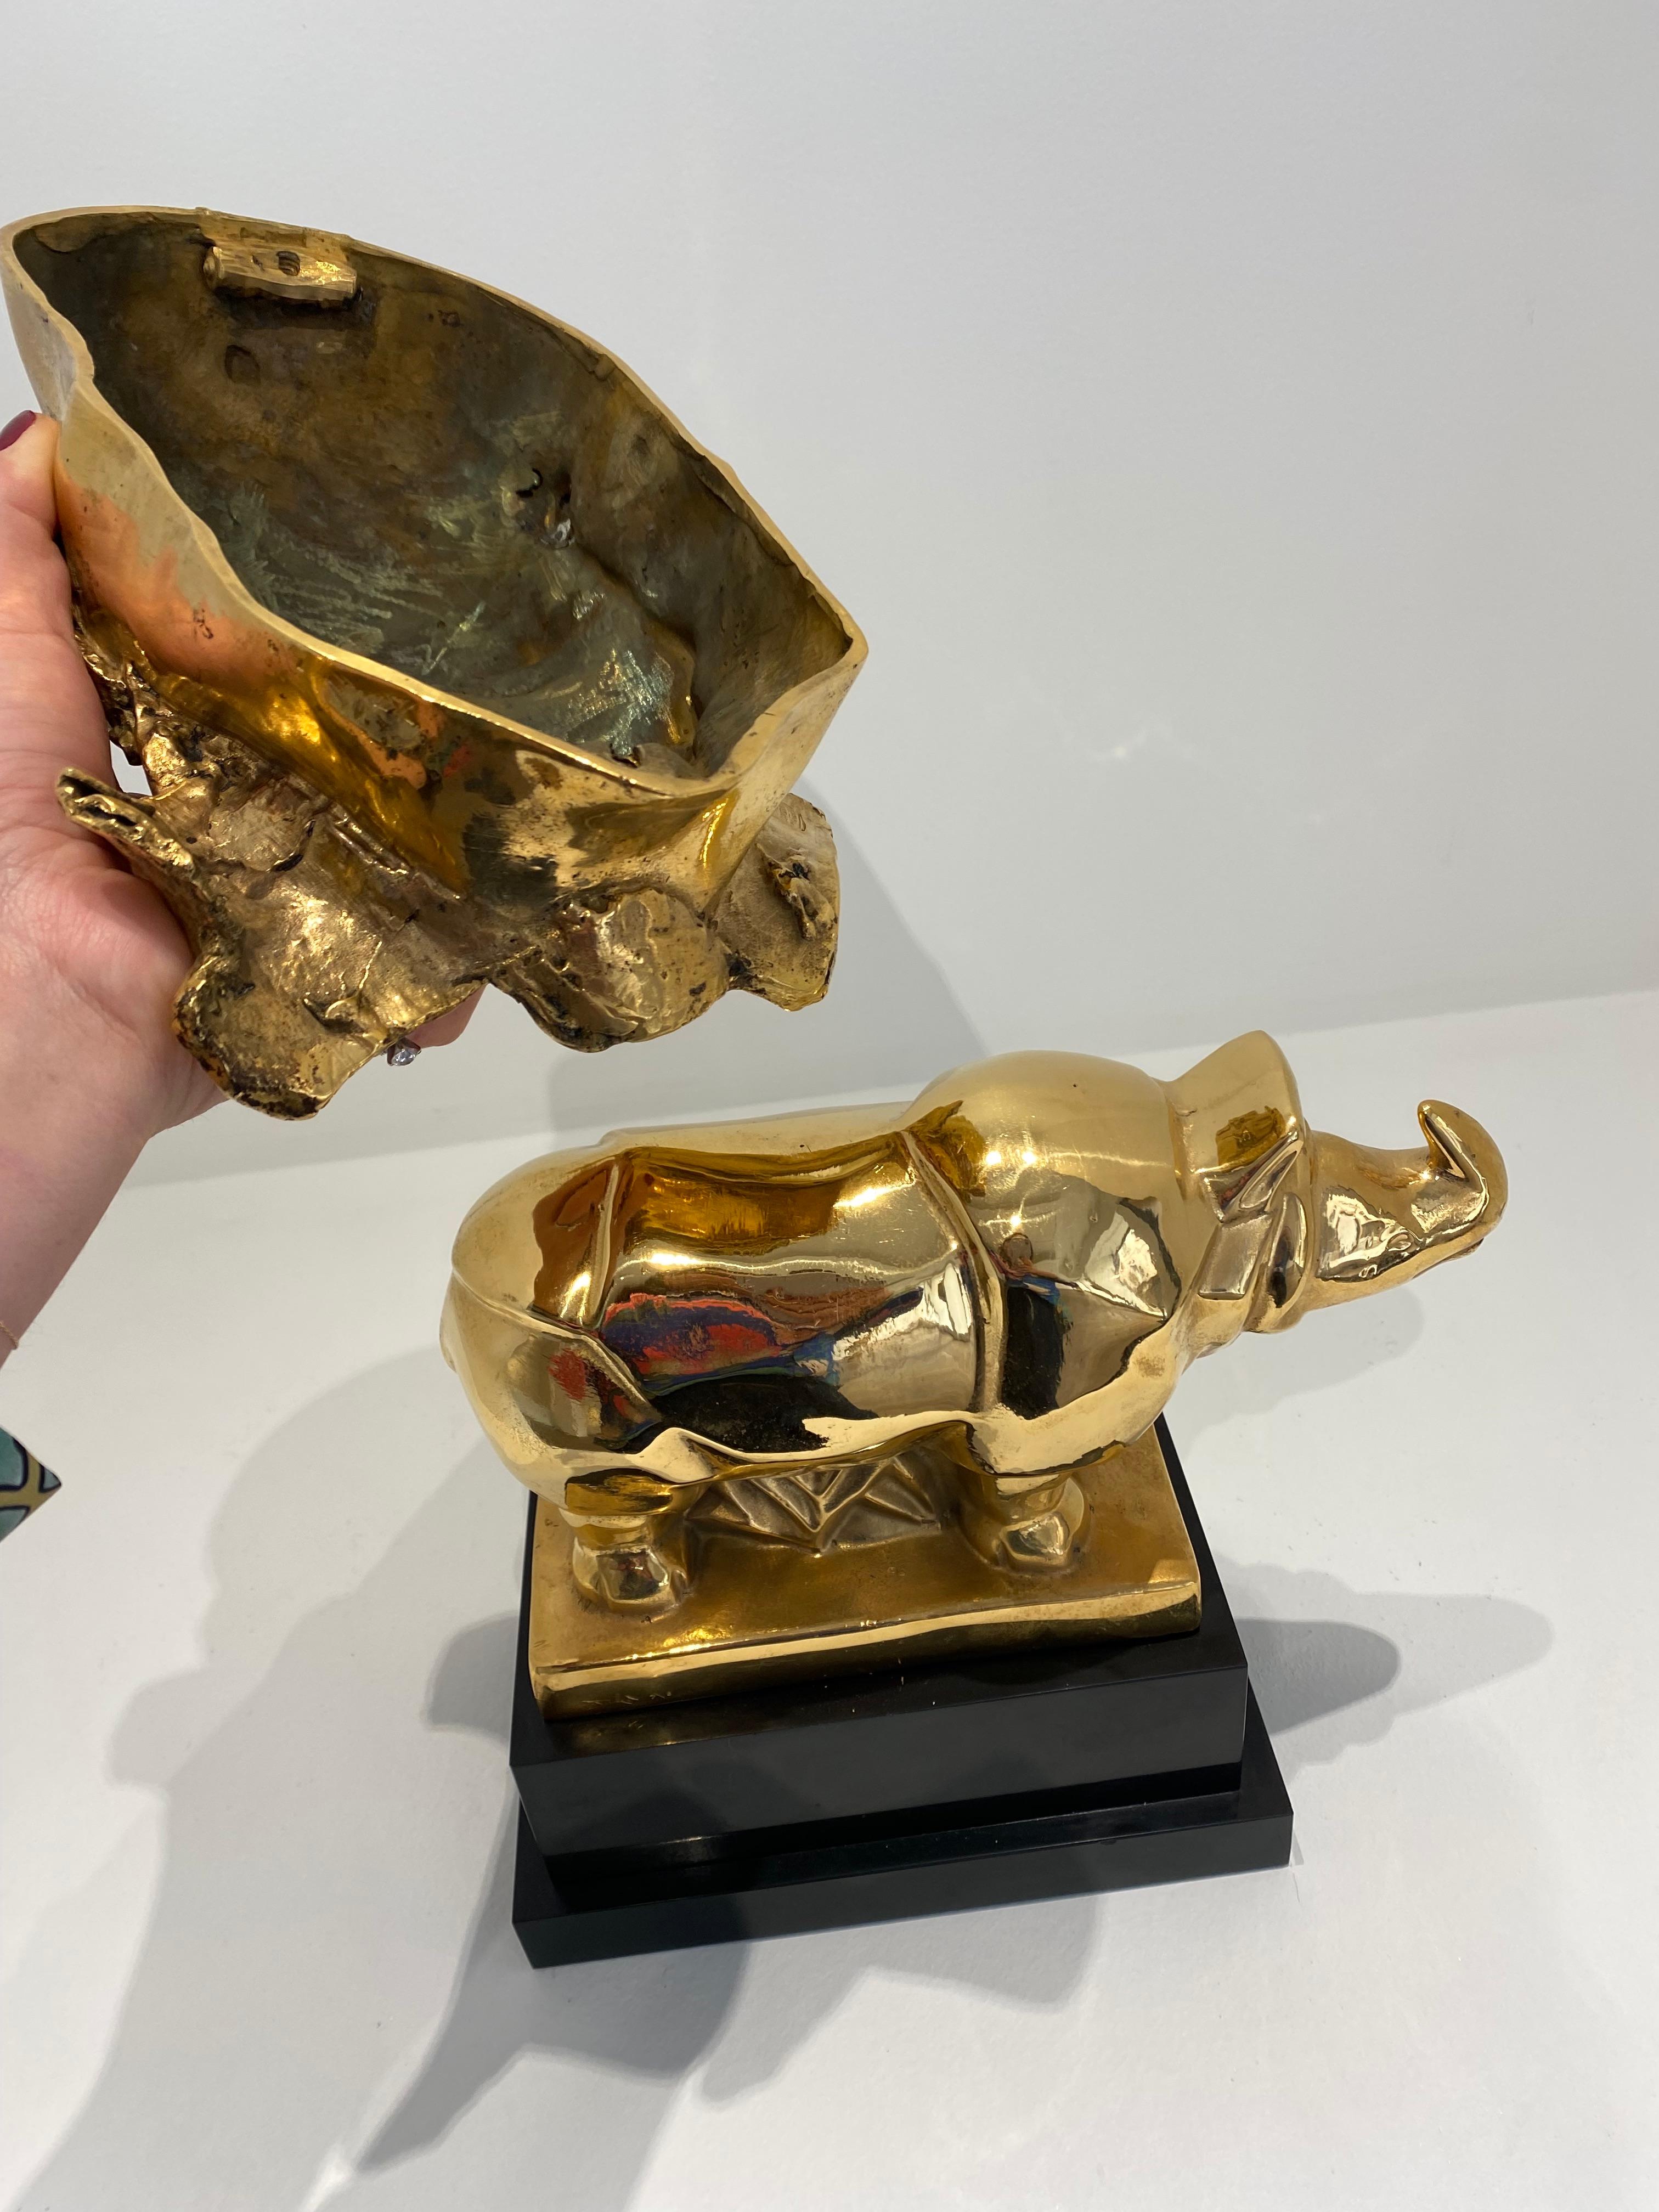 Masque de Napoléon sur un Rhinocéros, Sculpture, Dali, Gold, Animals, Bronze - Dada Art by Salvador Dalí